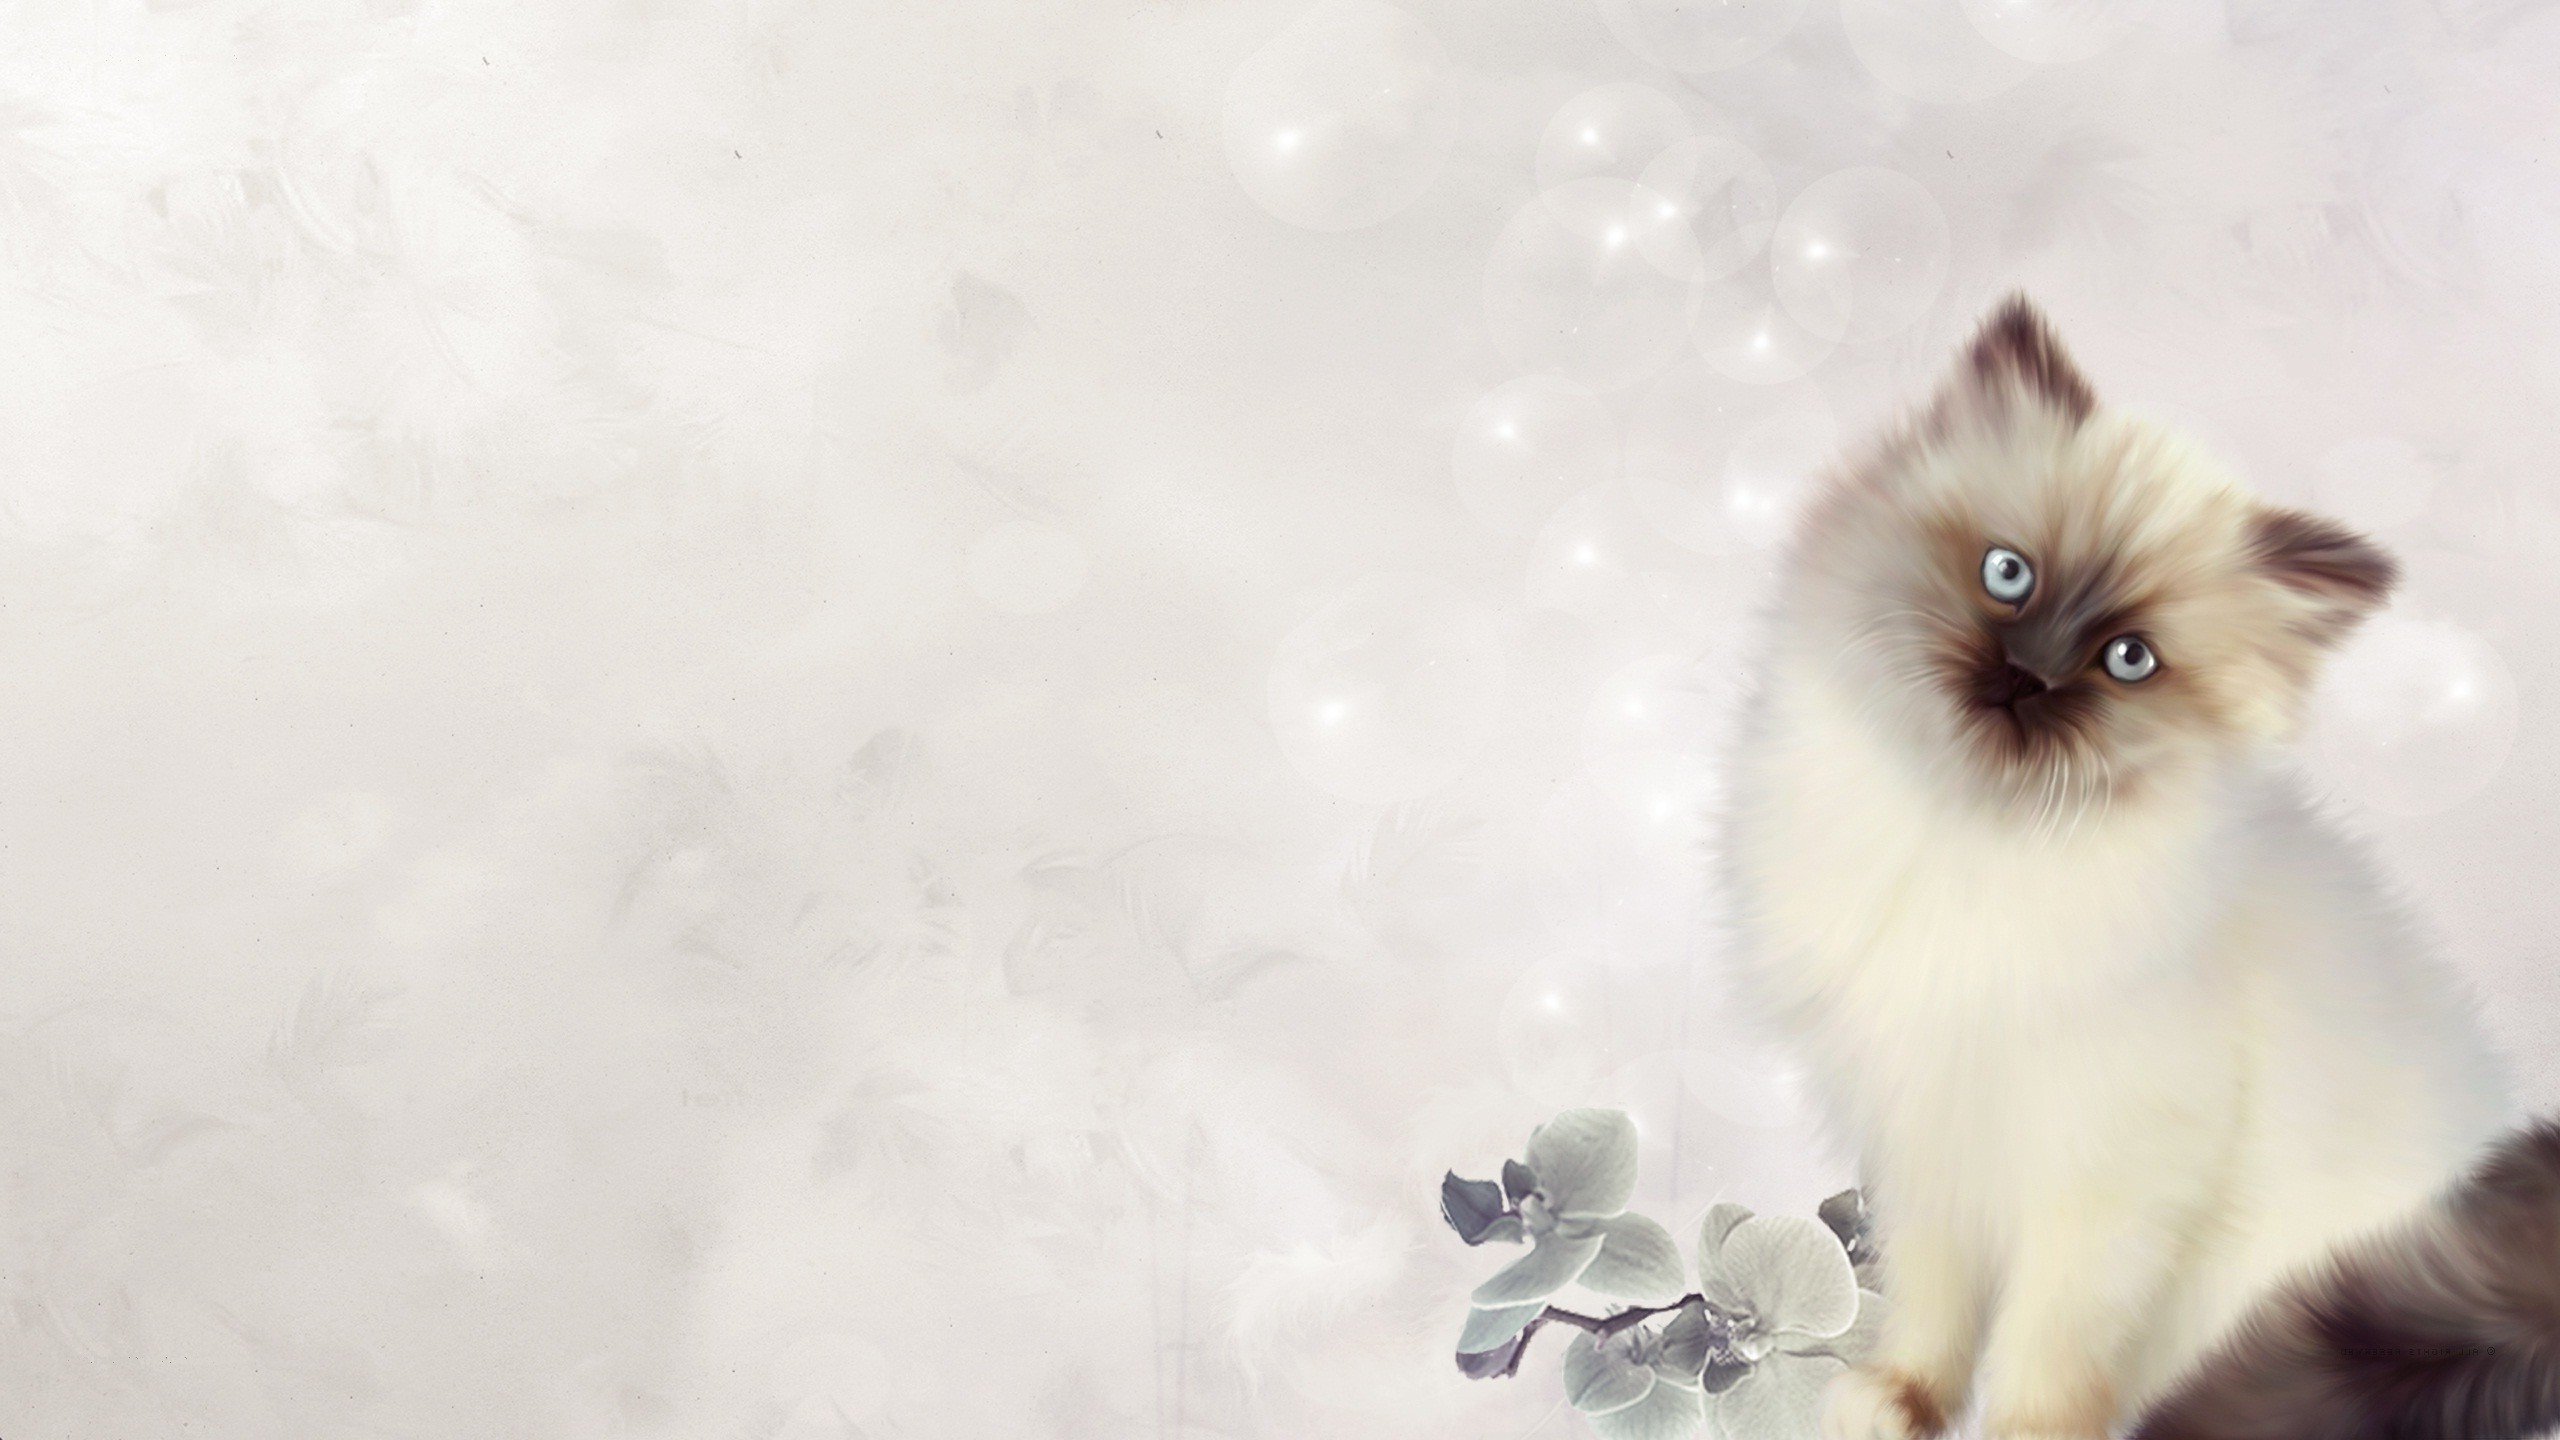 Download hd 2560x1440 Kitten desktop wallpaper ID:426600 for free